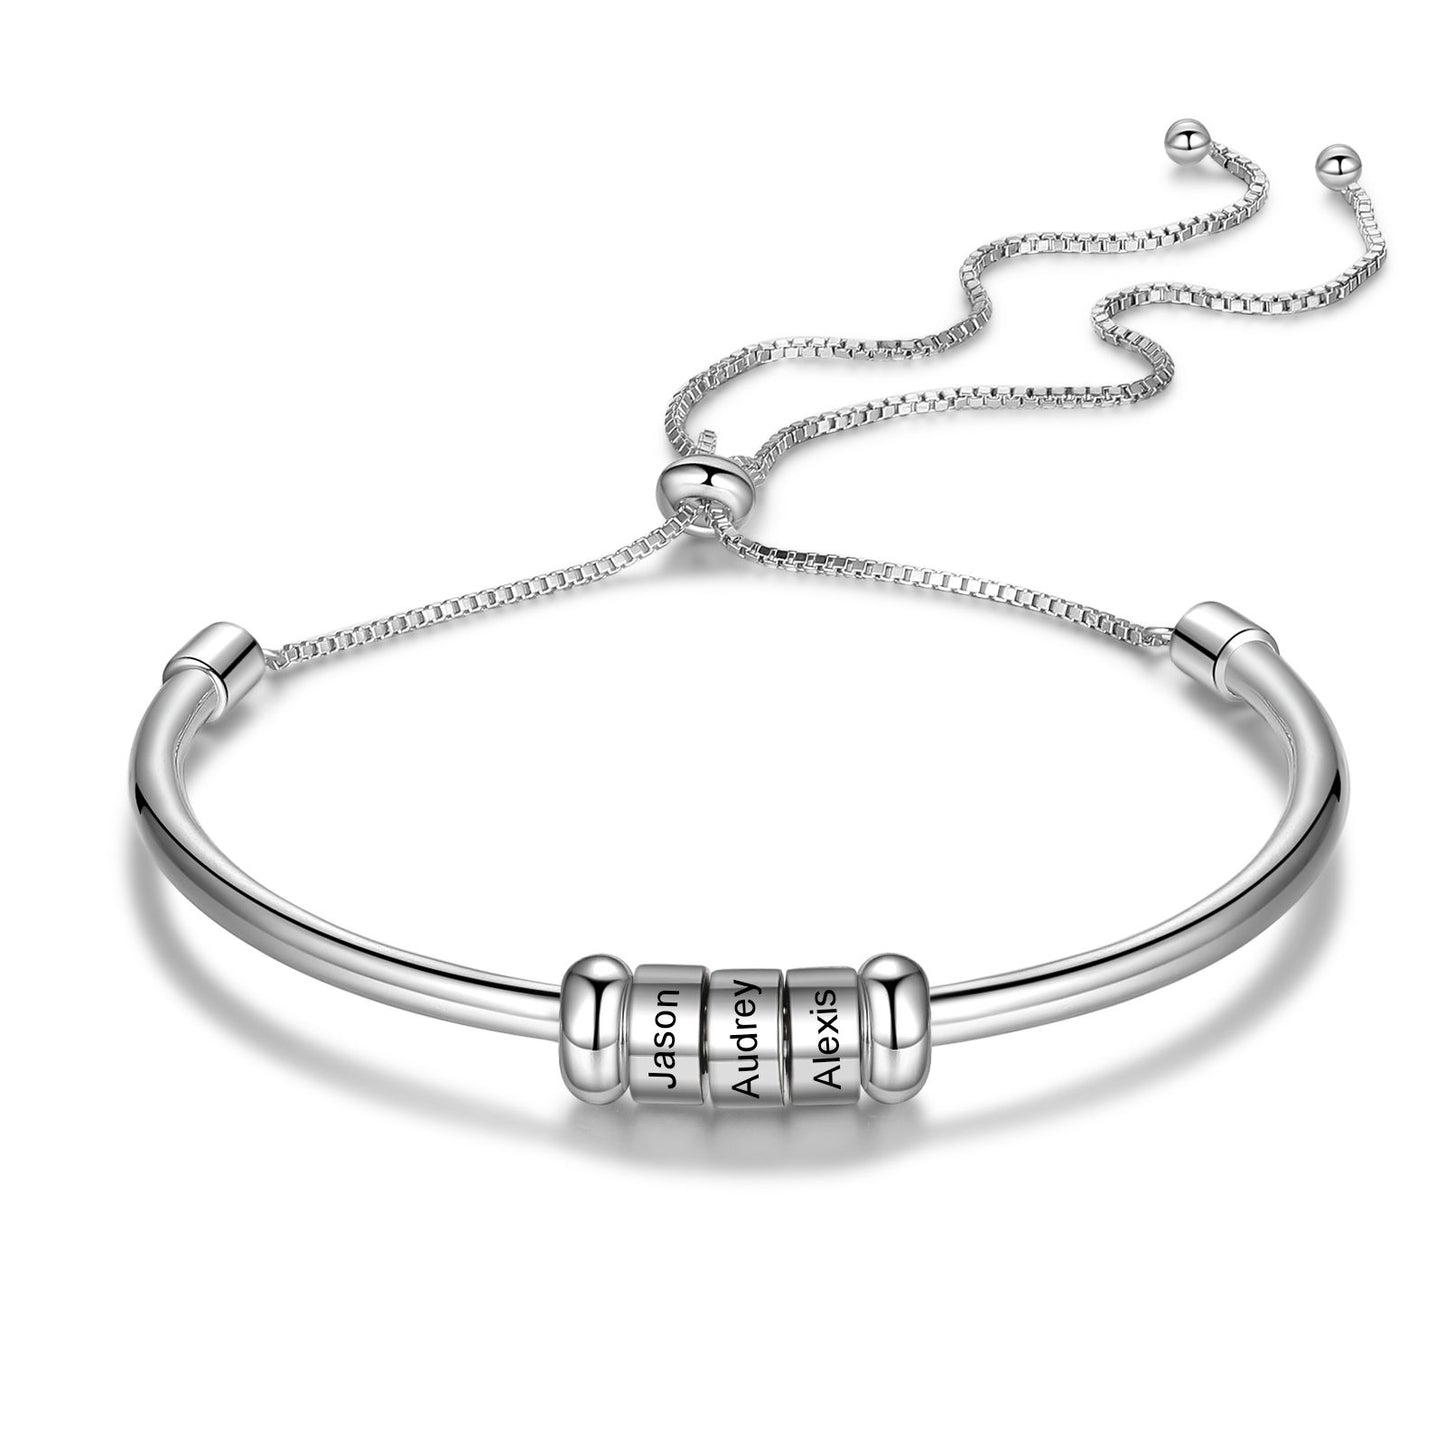 Bespoke Engraved Beads Bracelet For Women | Personalised Engraved Name Bracelet